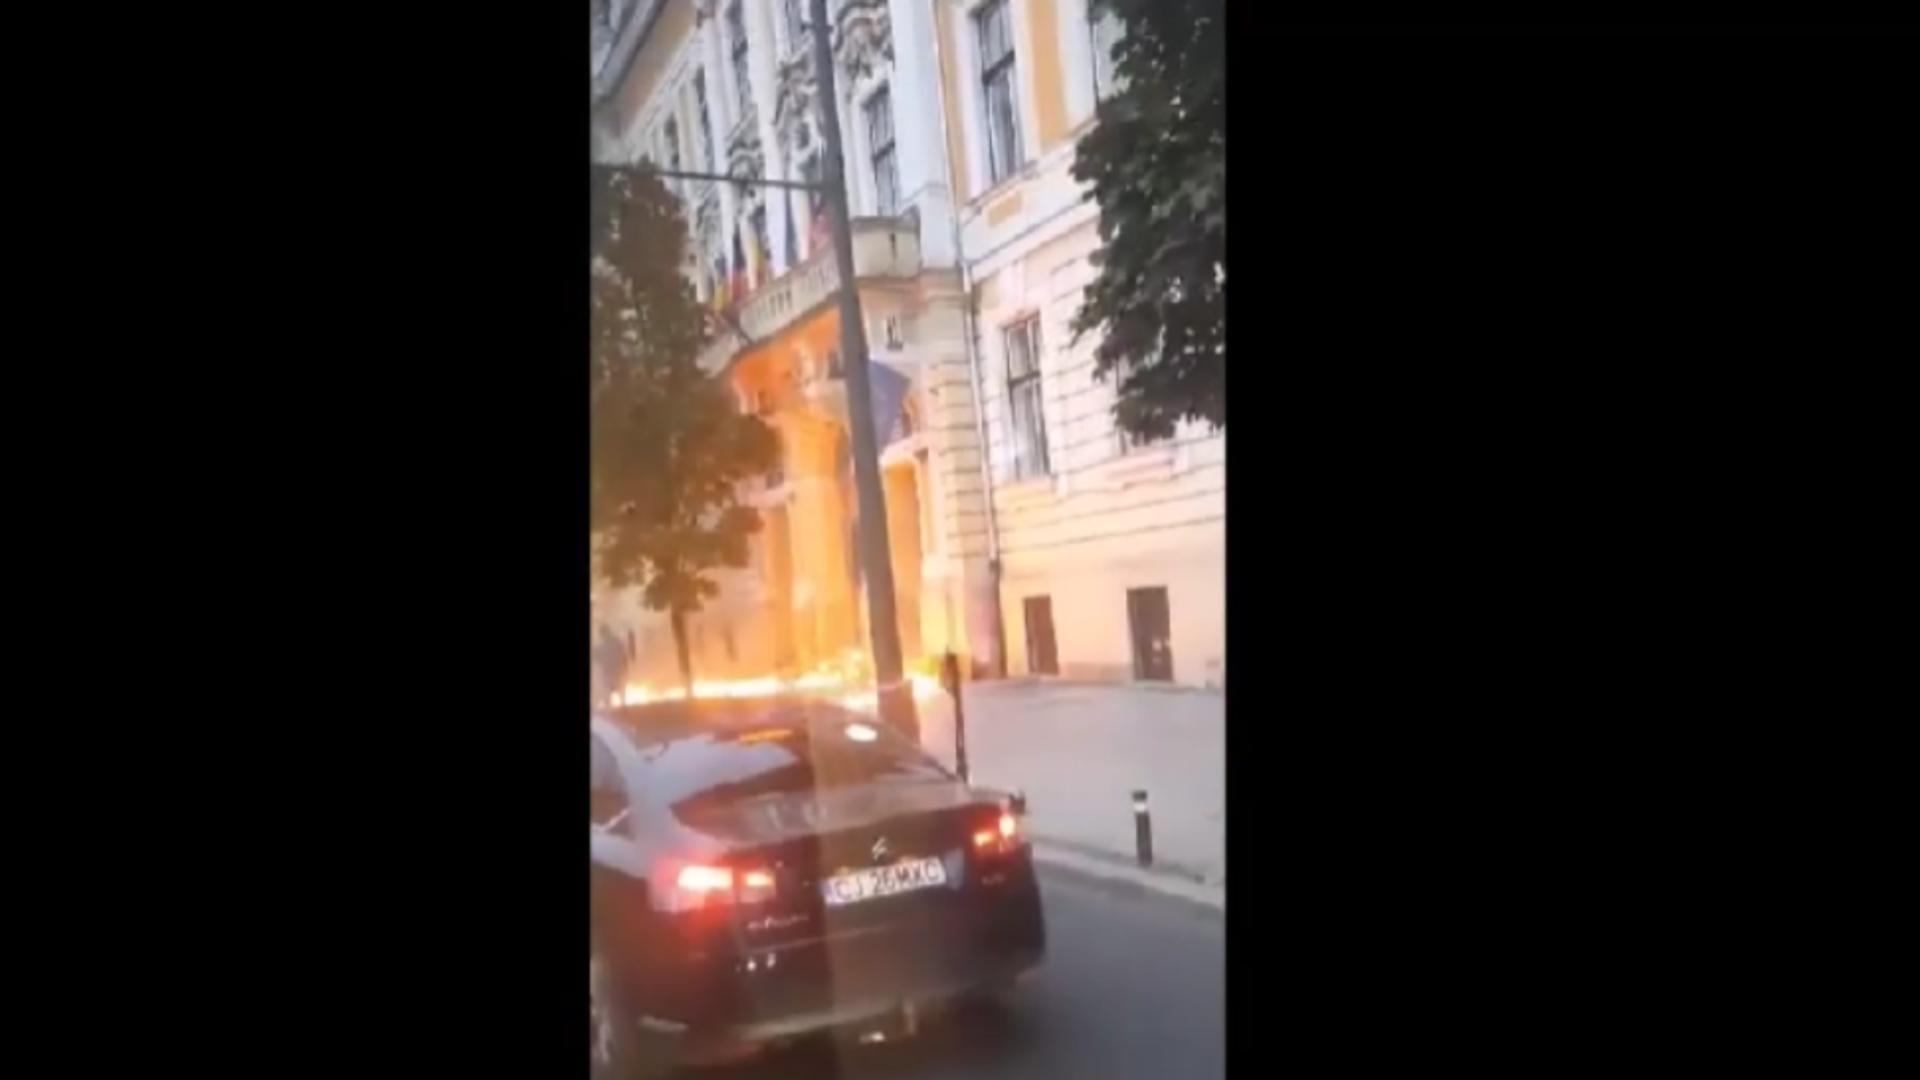 Ușa primăriei din Cluj Napoca a fost cuprinsă de flăcări după ce un piroman a aruncat cu benzină pe ea și i-a dat foc